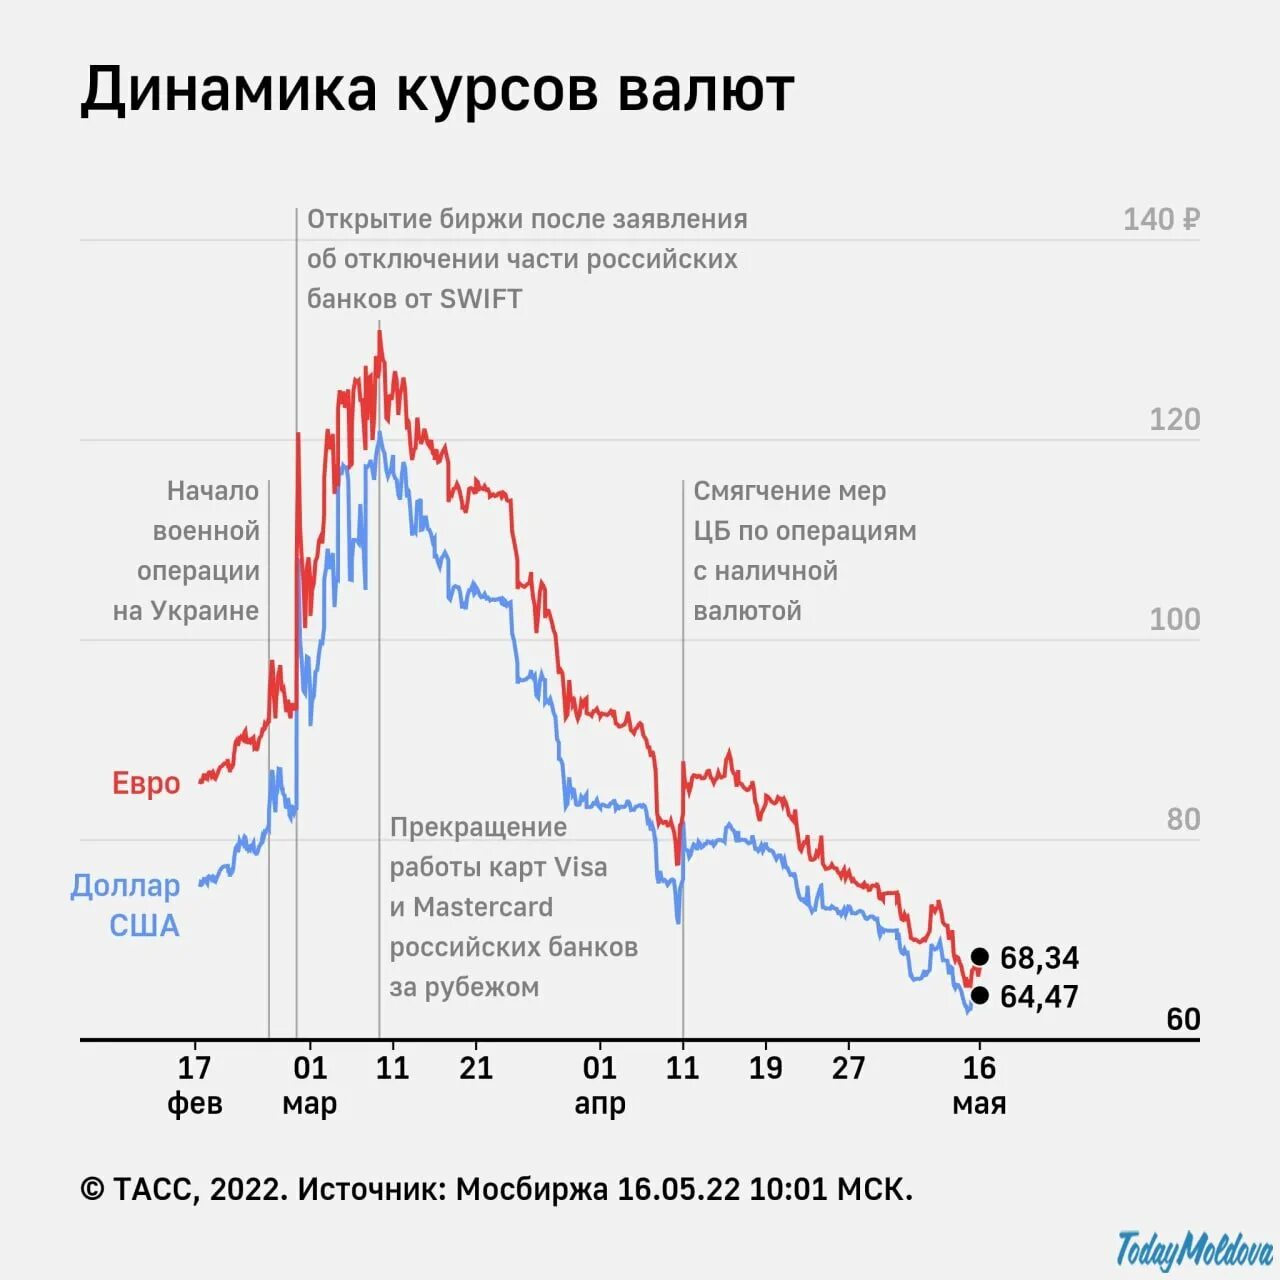 Курс рубля россия динамика